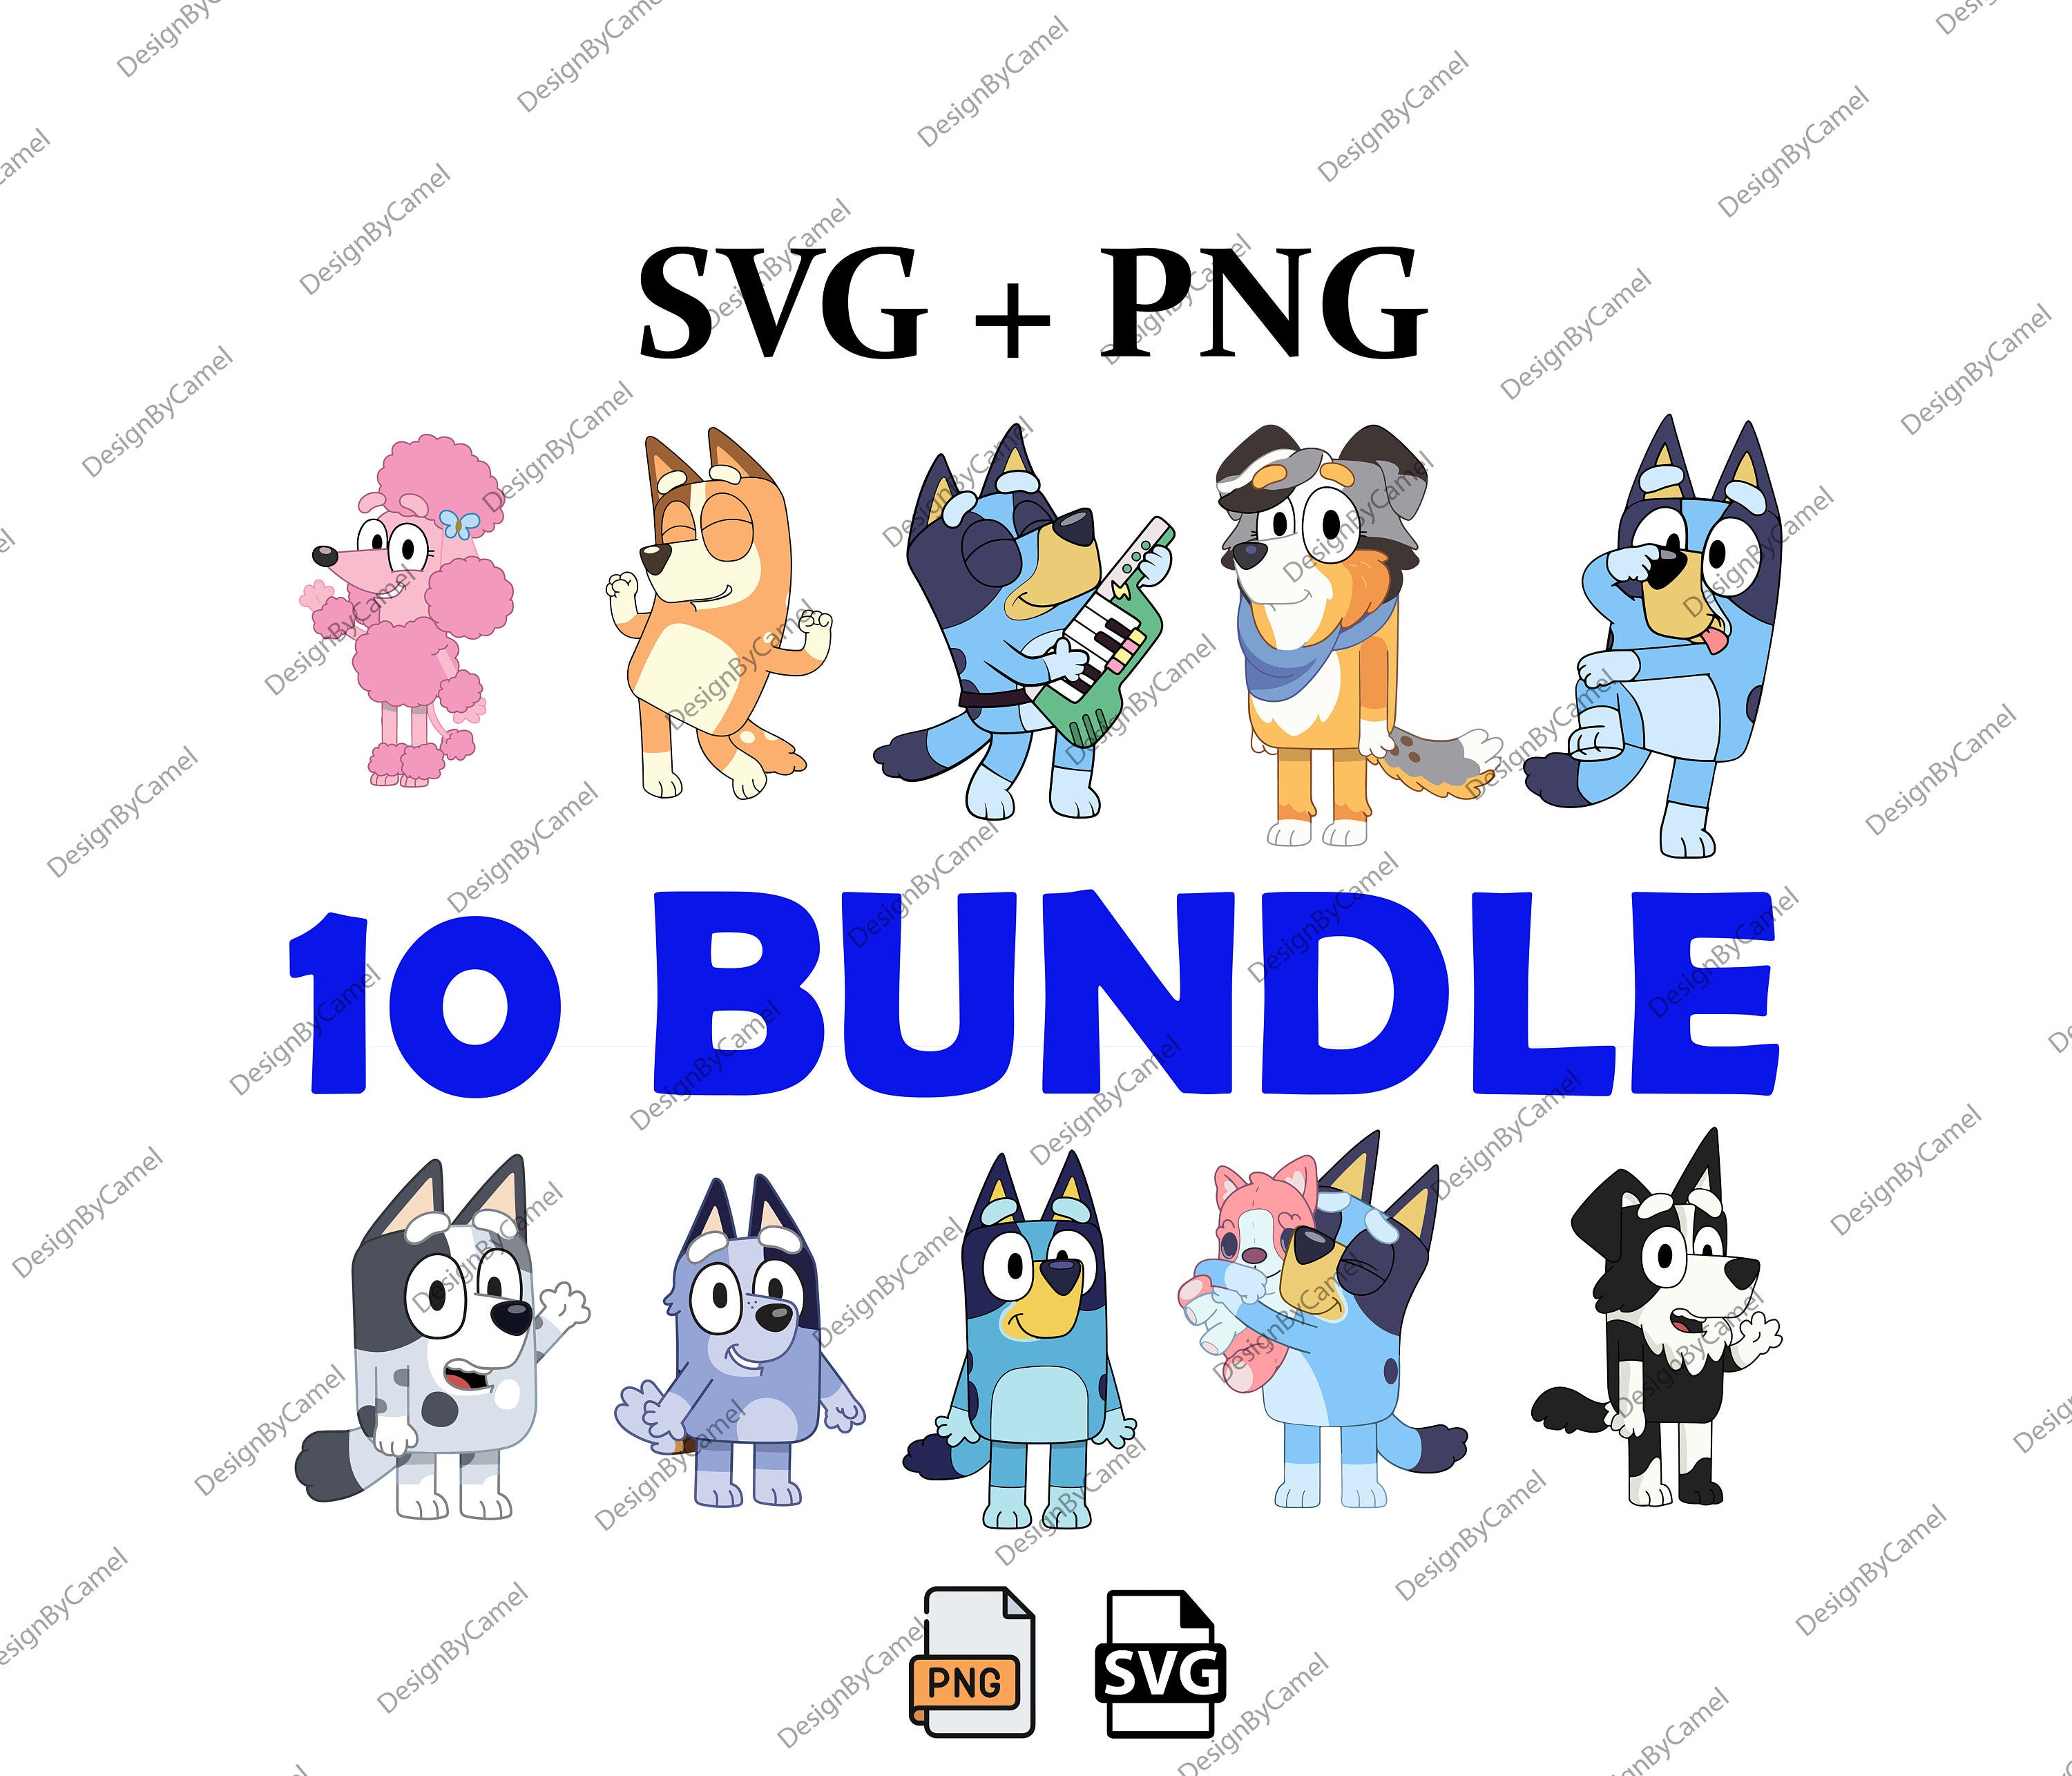 Bluey Dog Bundle Png, 10 Bluey Dog Png, Bluey FriendsPng, Bluey Bingo, Png For Shirts, Png, Clipart png, Digital Download